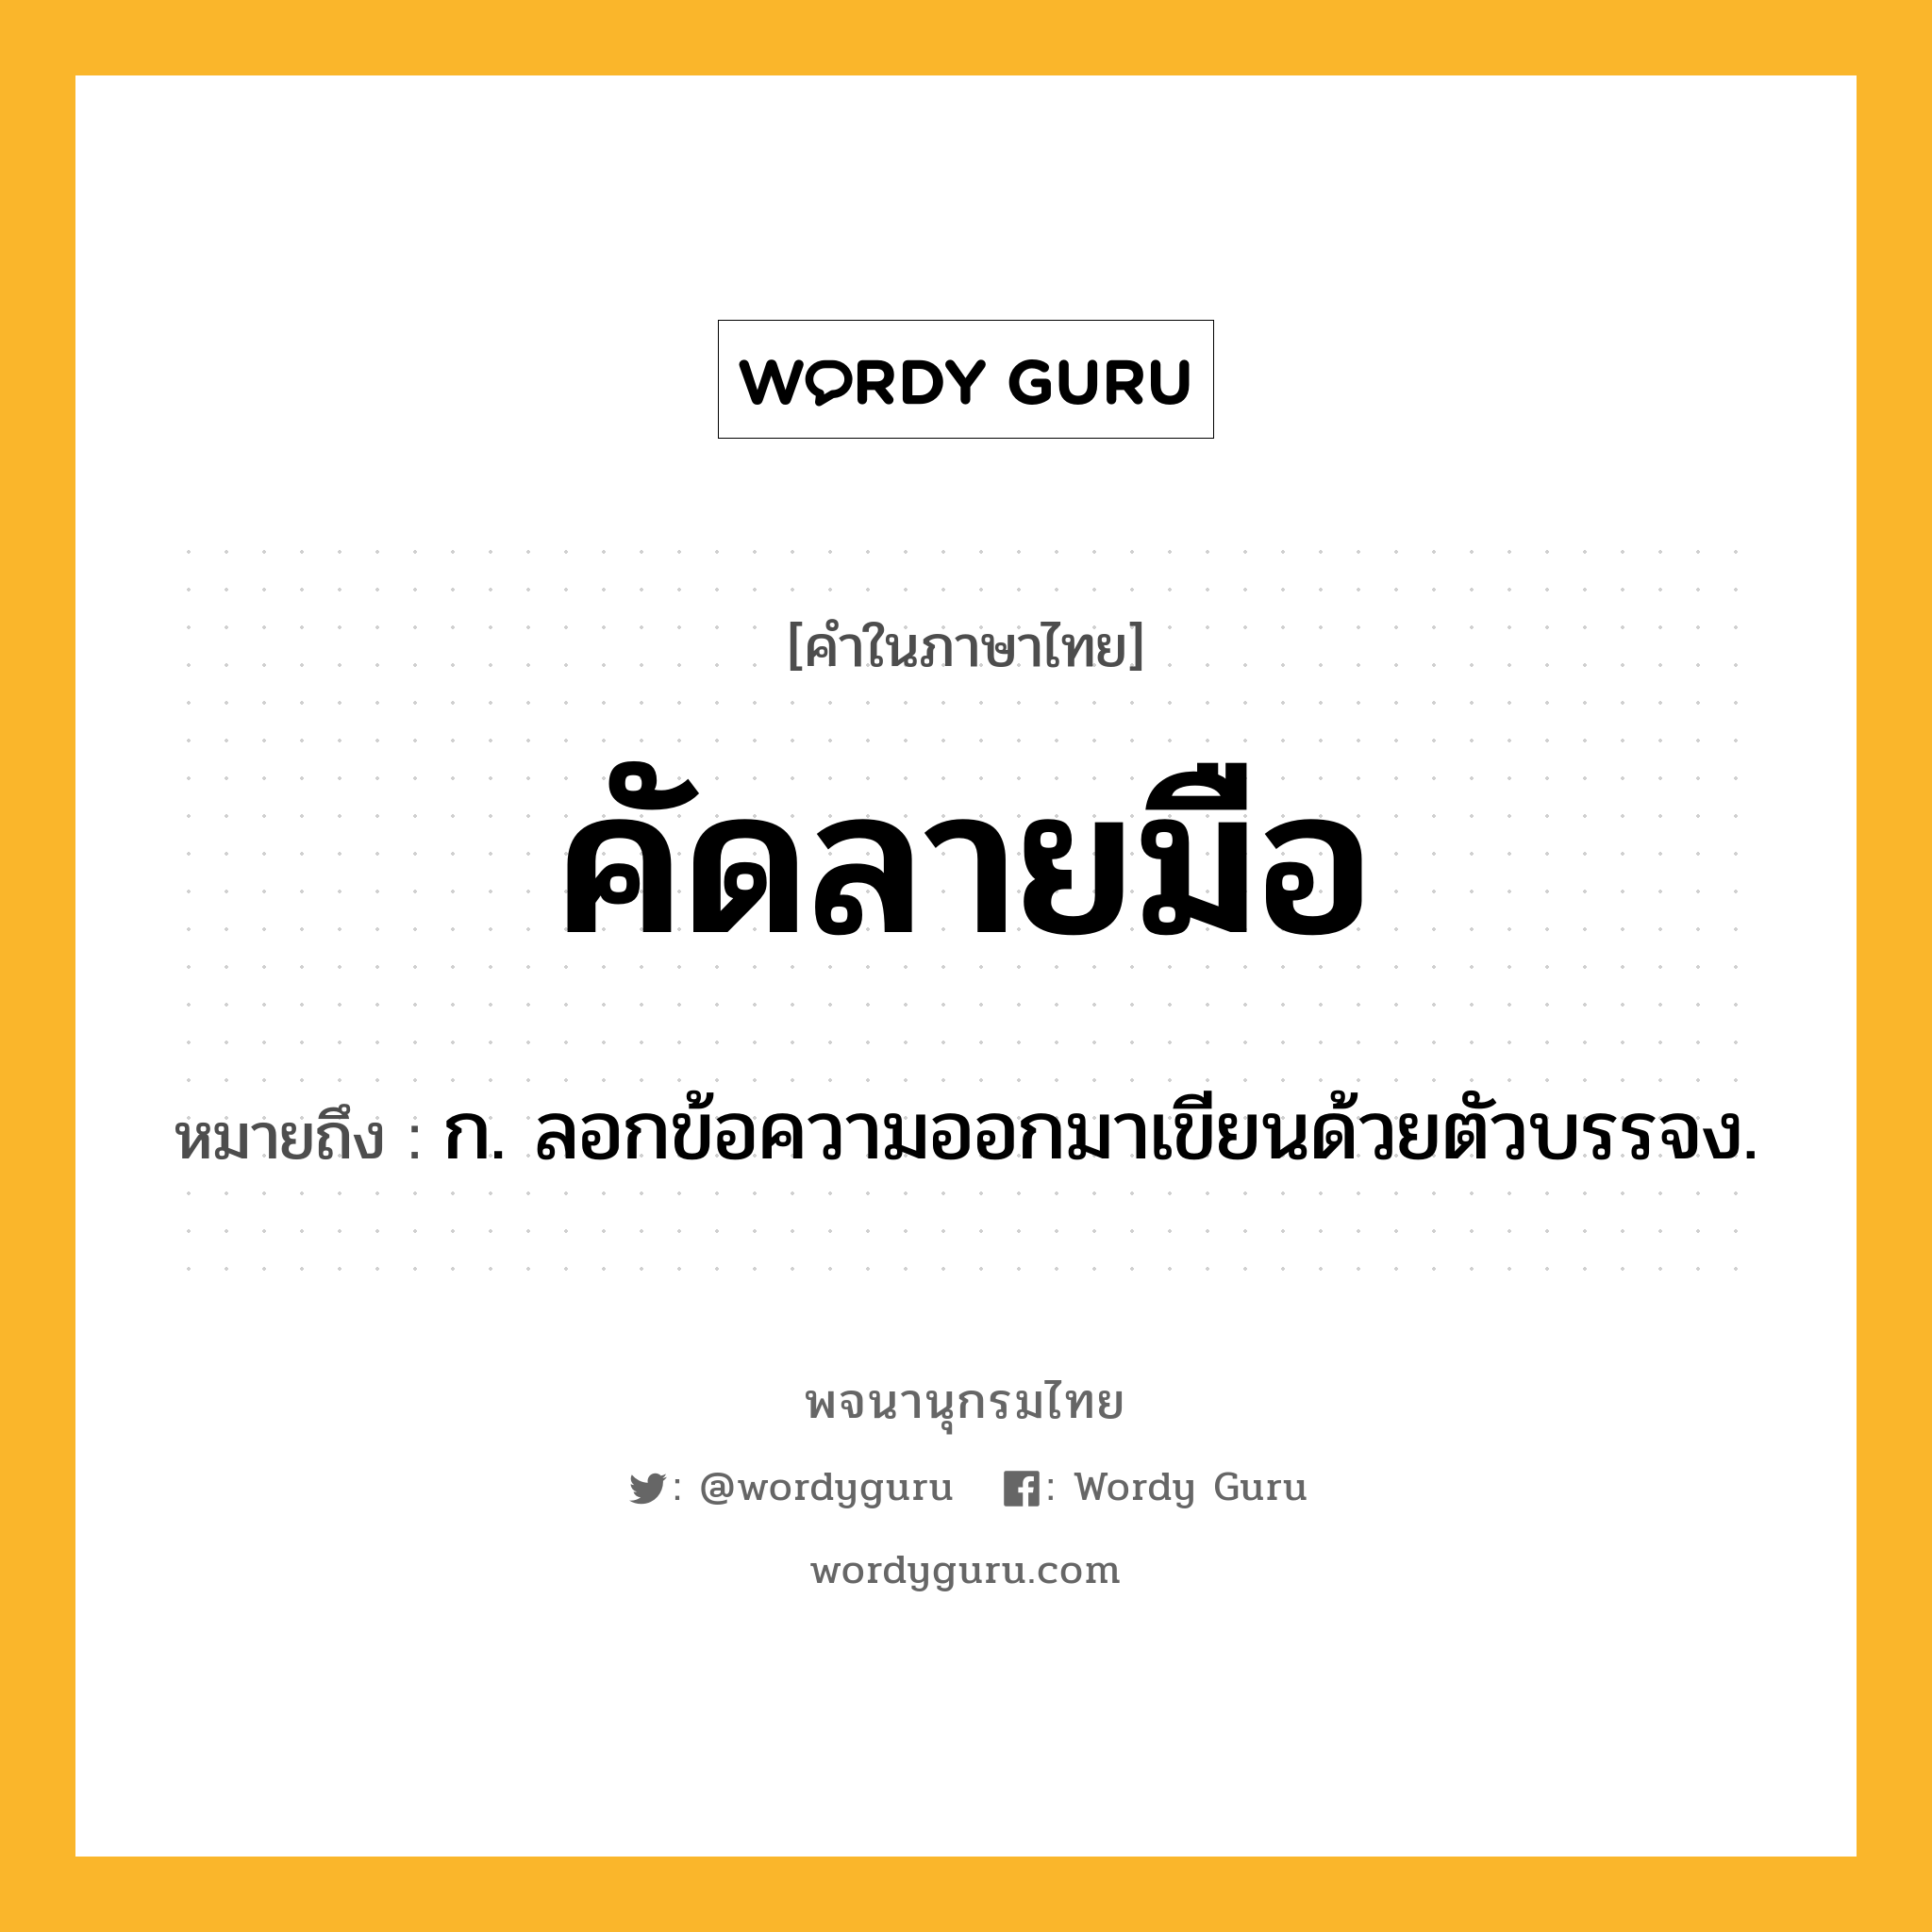 คัดลายมือ ความหมาย หมายถึงอะไร?, คำในภาษาไทย คัดลายมือ หมายถึง ก. ลอกข้อความออกมาเขียนด้วยตัวบรรจง.